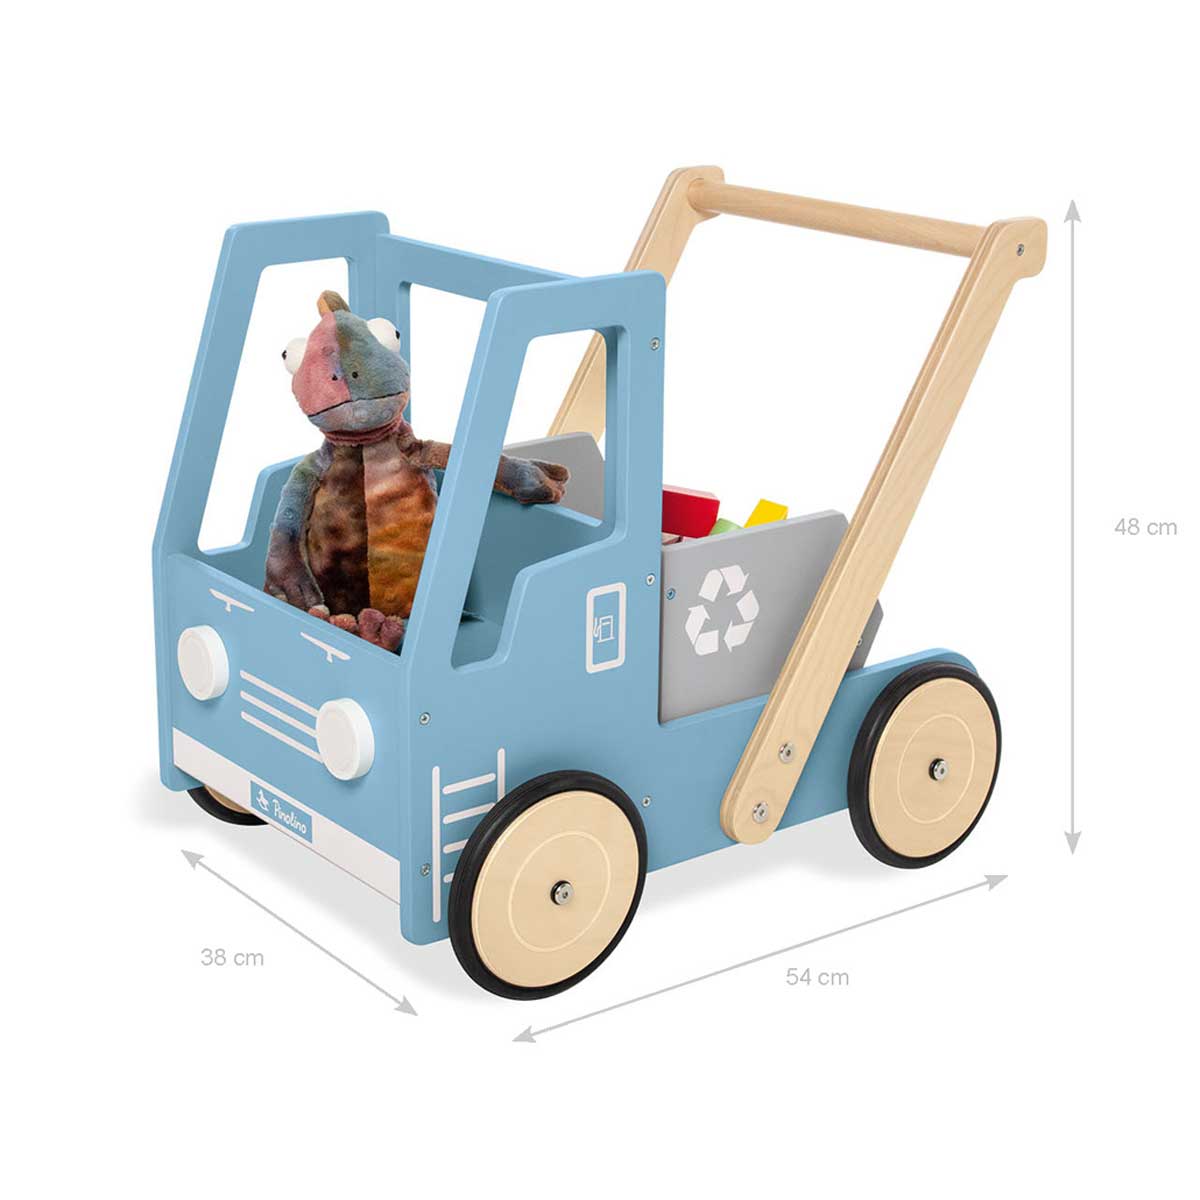 Drvena kolica – guralica za učenje hodanja kamion Pinolino Fred plava 5